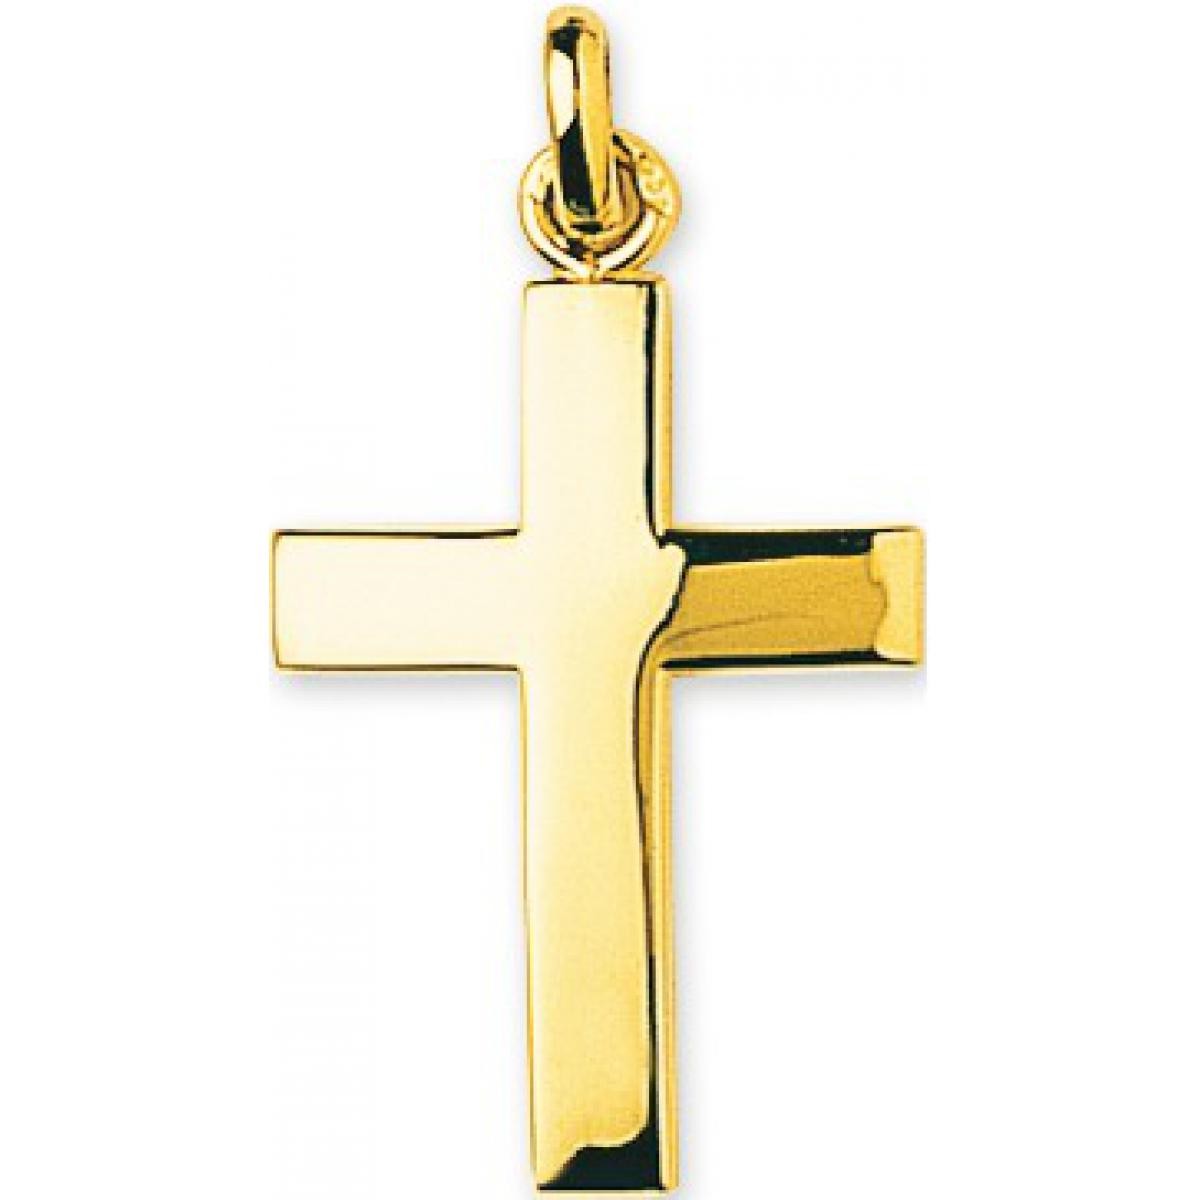 Promo : Pendentif croix Or 375/1000 jaune (9K)